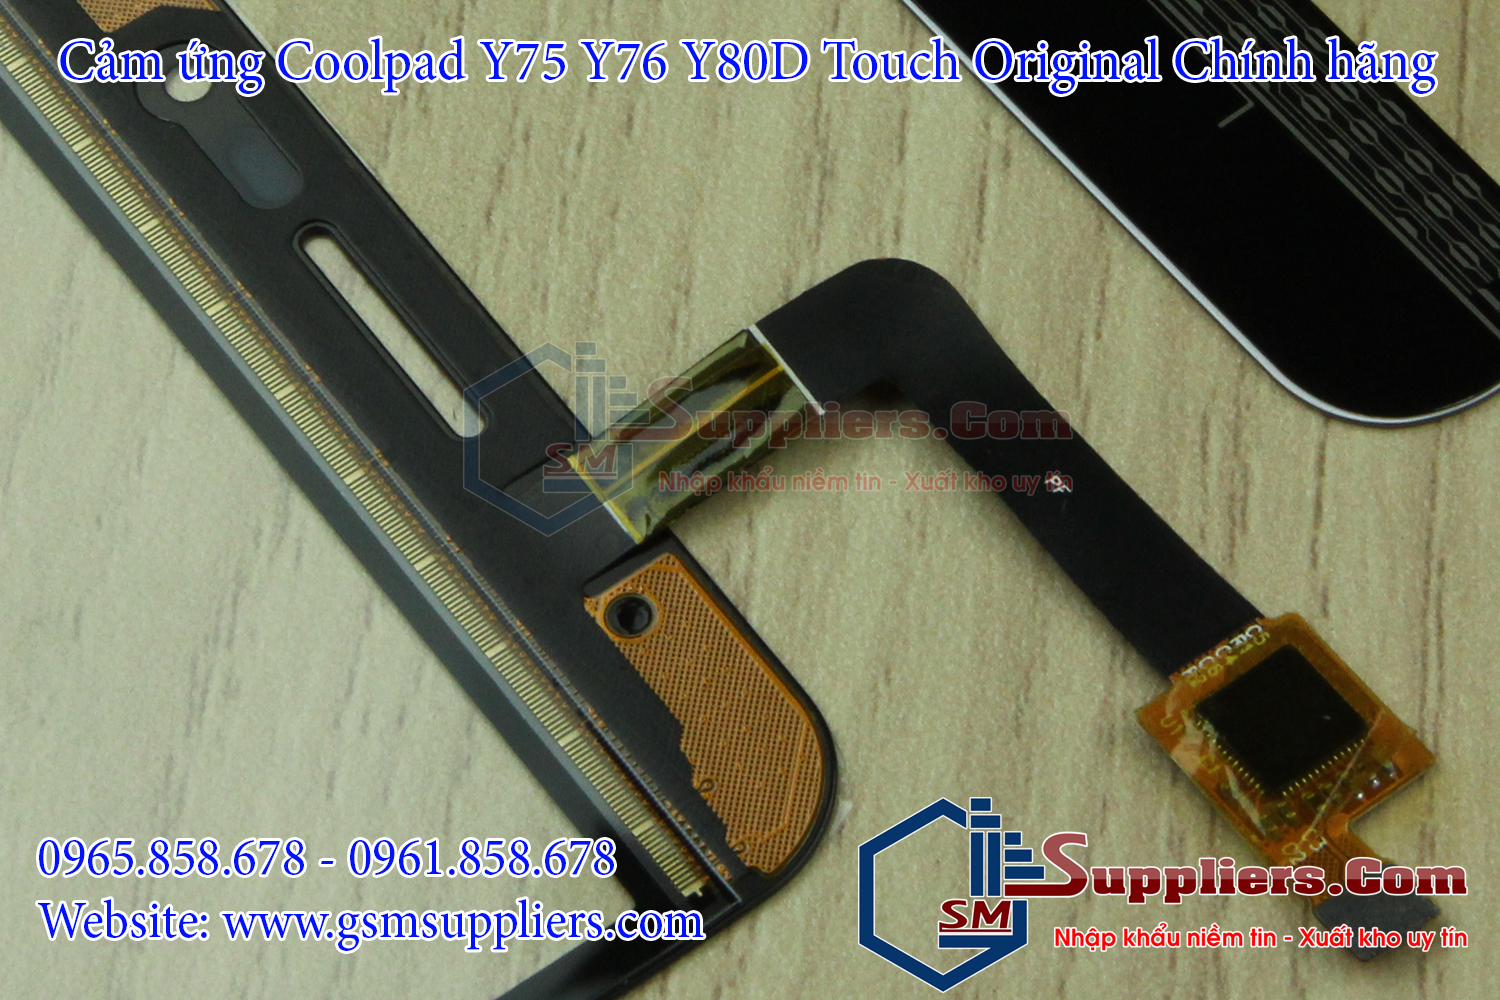 cam ung coolpad y75 y76 y80d touch original chinh hang 5